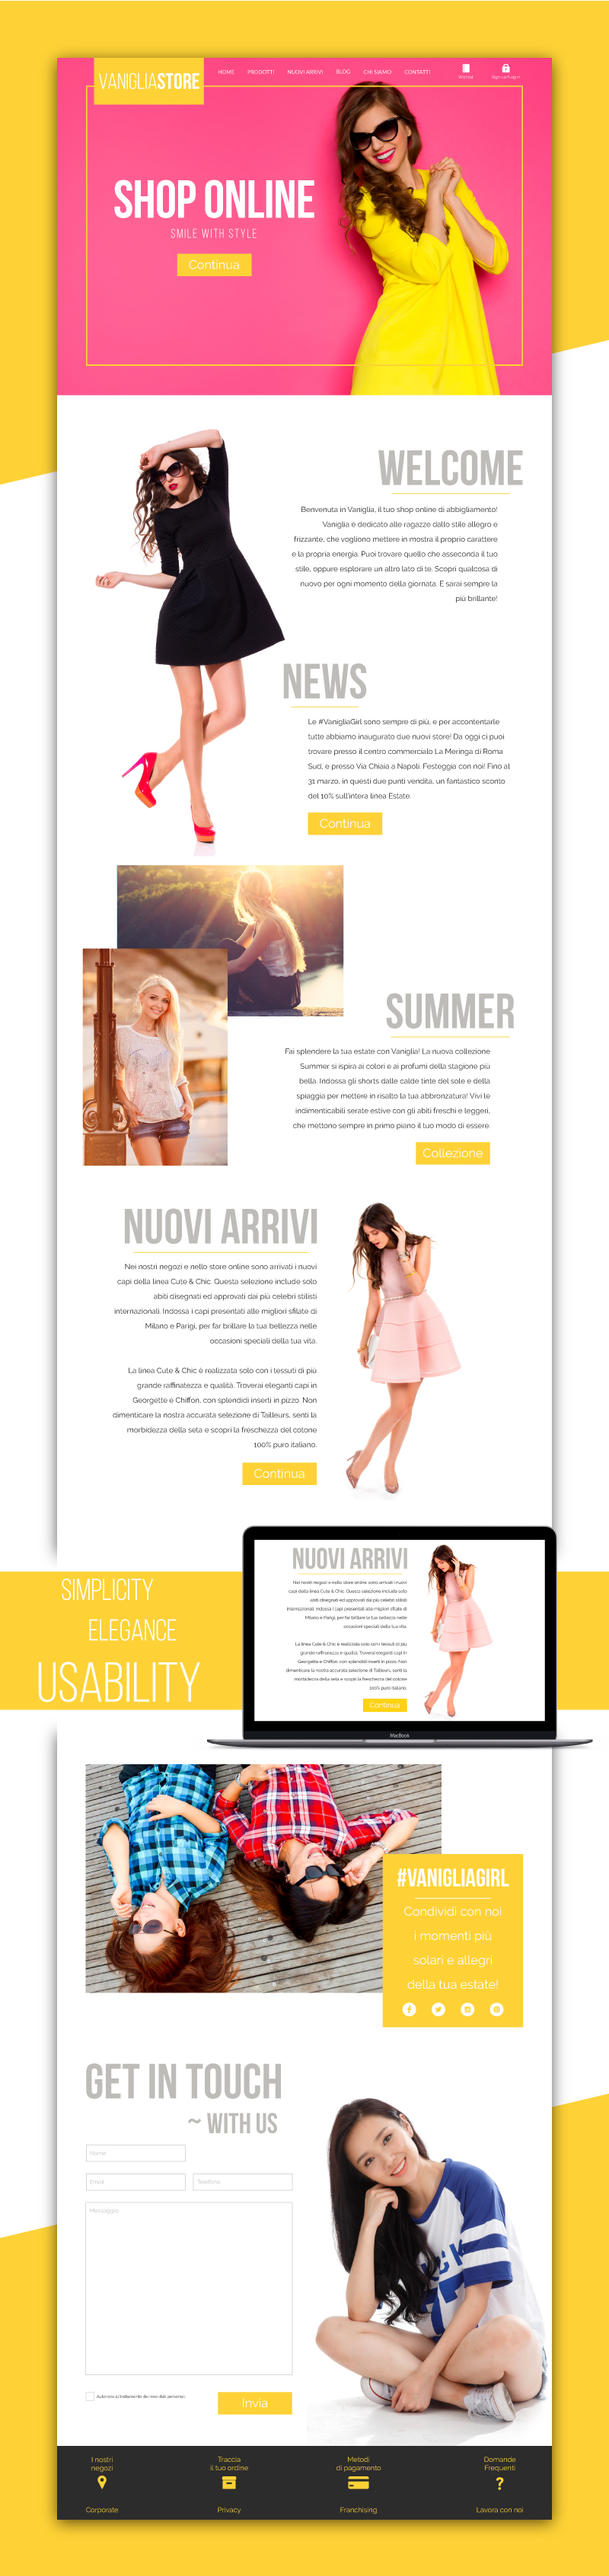 Sito web Portfolio - Abbigliamento femminile - Homepage